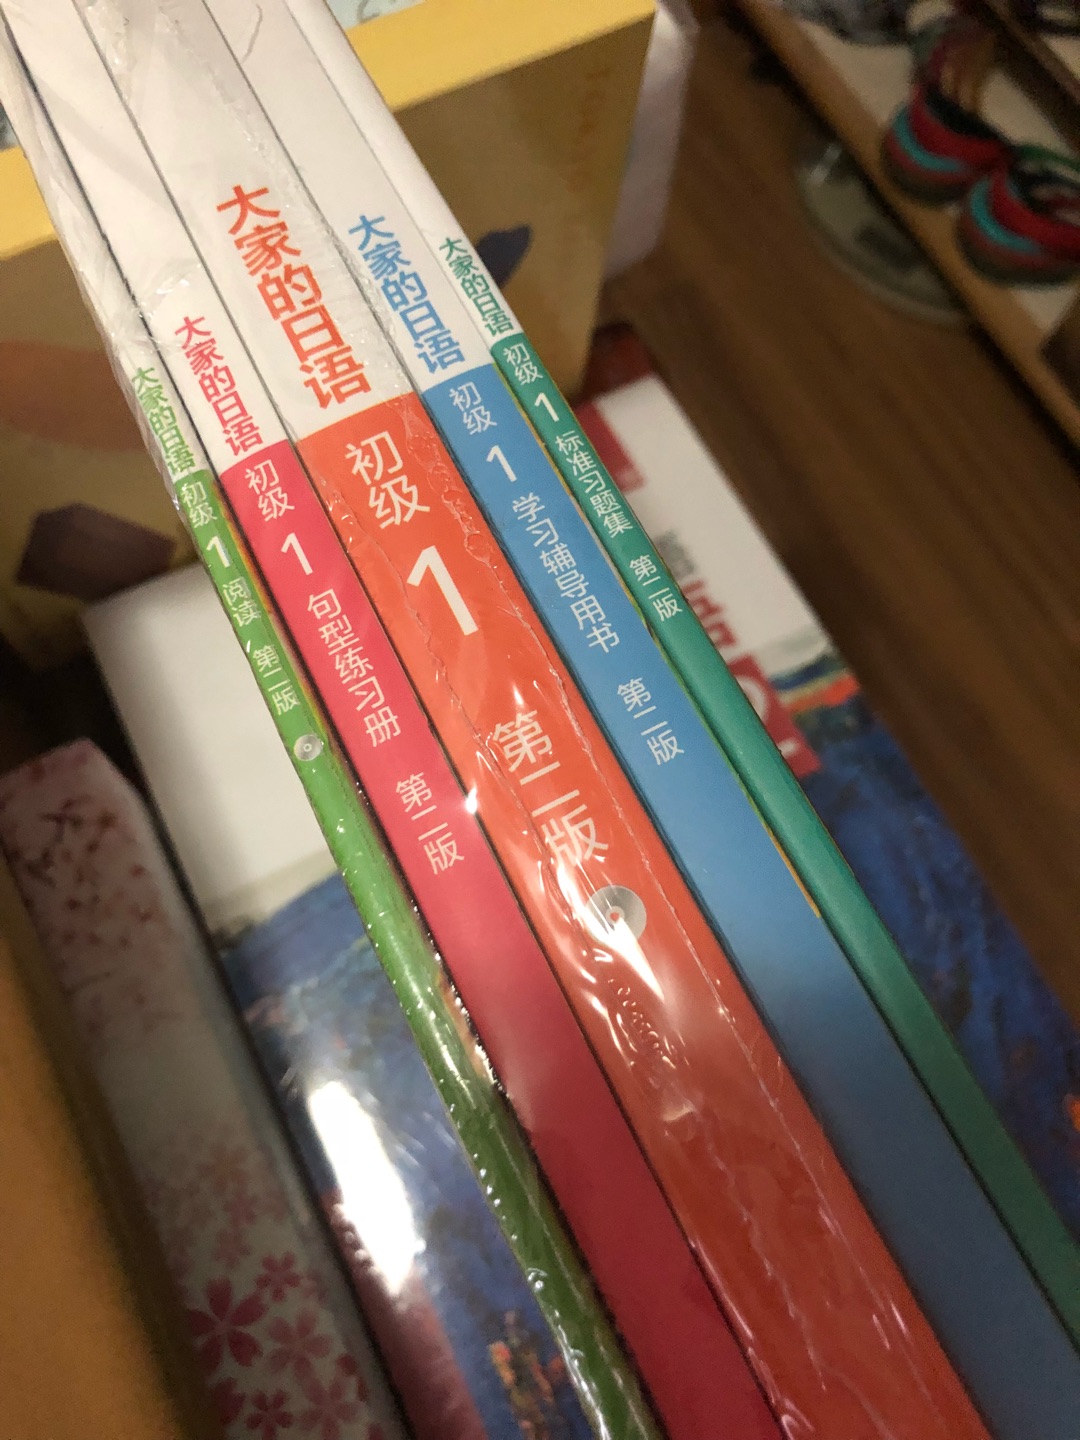 书不错，适合日语初学者，全套内容丰富。活动给力，纸箱包装，完好无损。